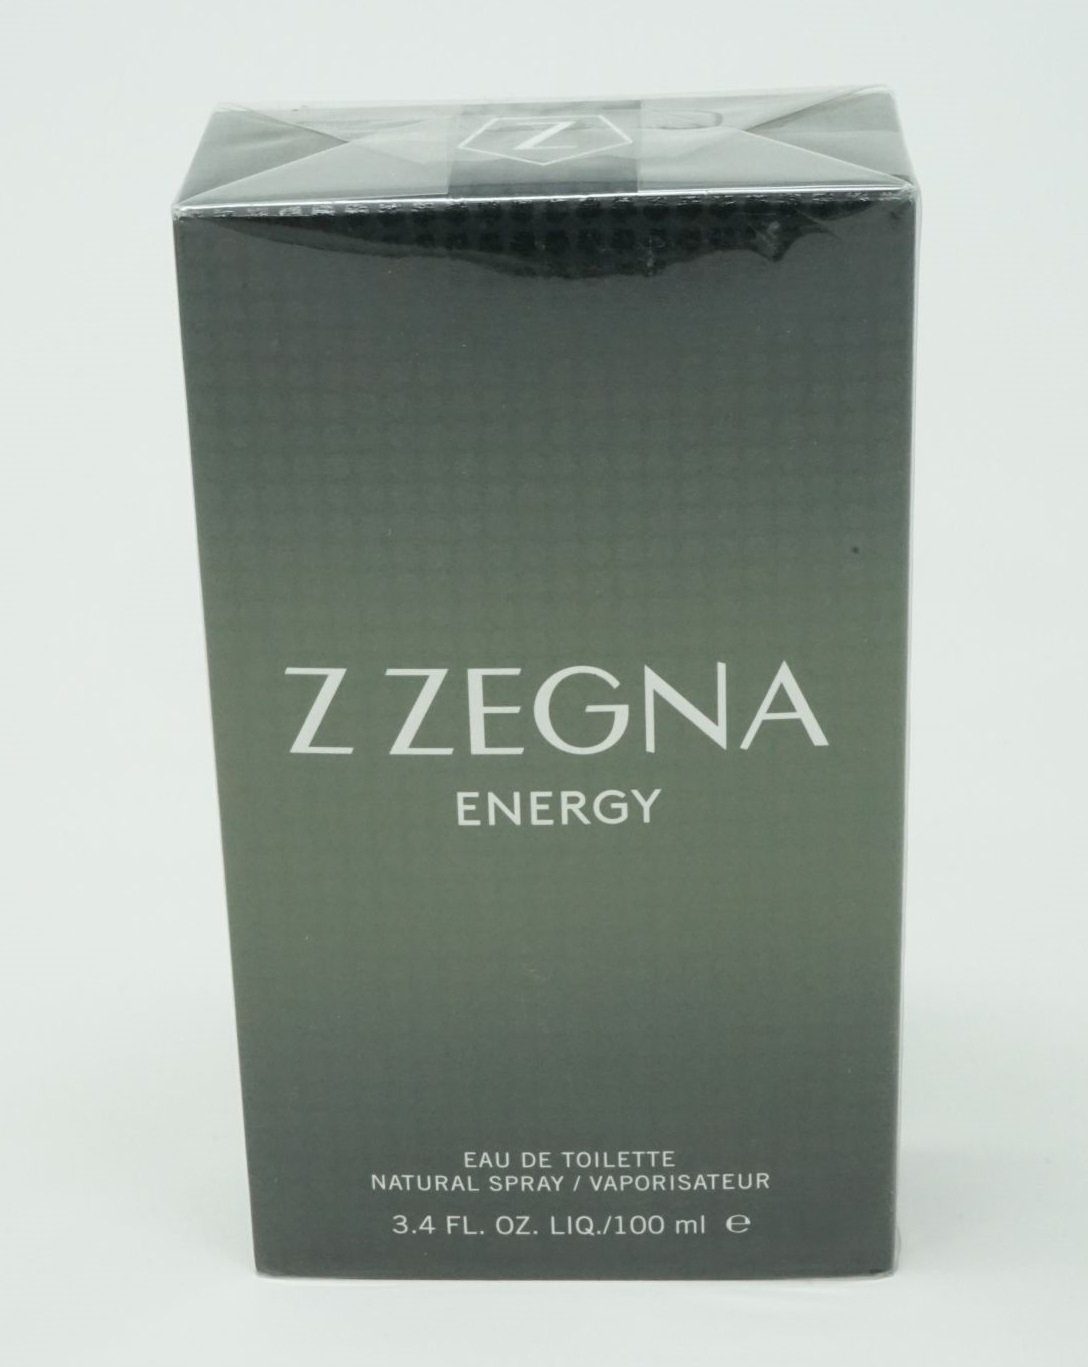 Ermenegildo Zegna Eau de Toilette Ermenegildo Zegna Z Zegna Energy Eau de Toilette Spray 100 ml | Eau de Toilette